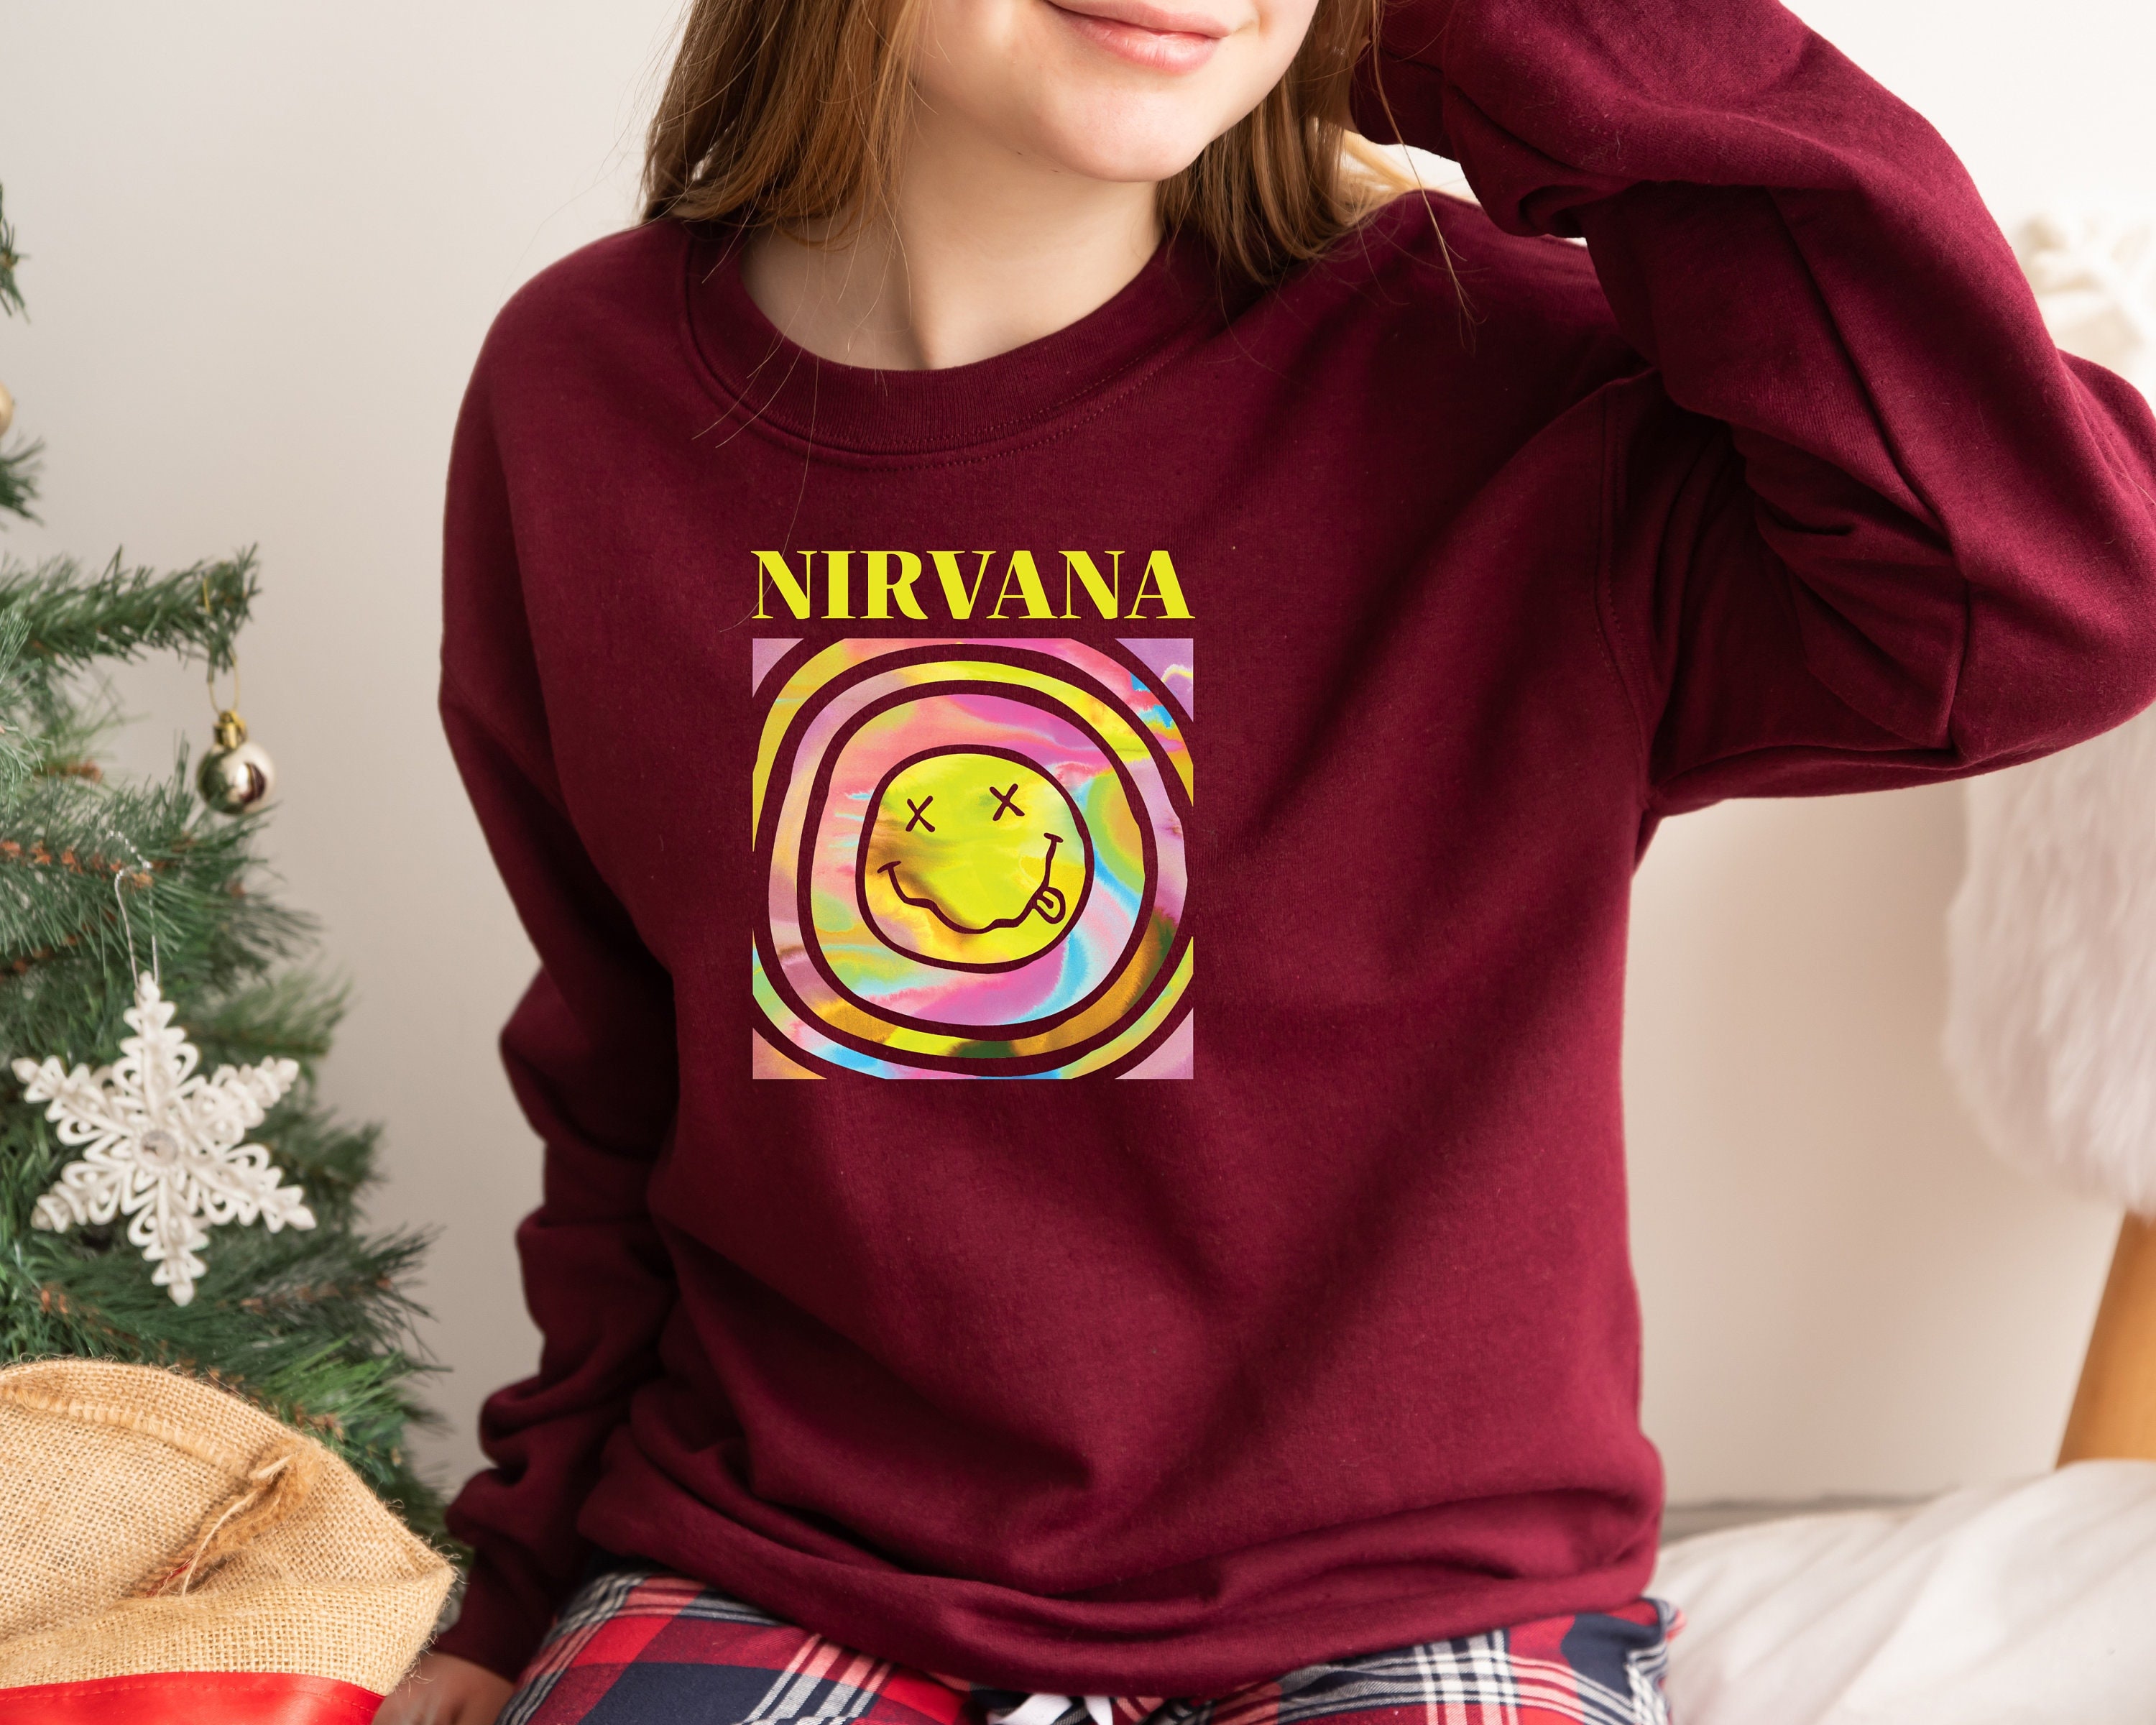 Discover Nirvana Smiley Face Crewneck Sweatshirt, Nirvana Sweatshirt, Preppy Sweatshirt